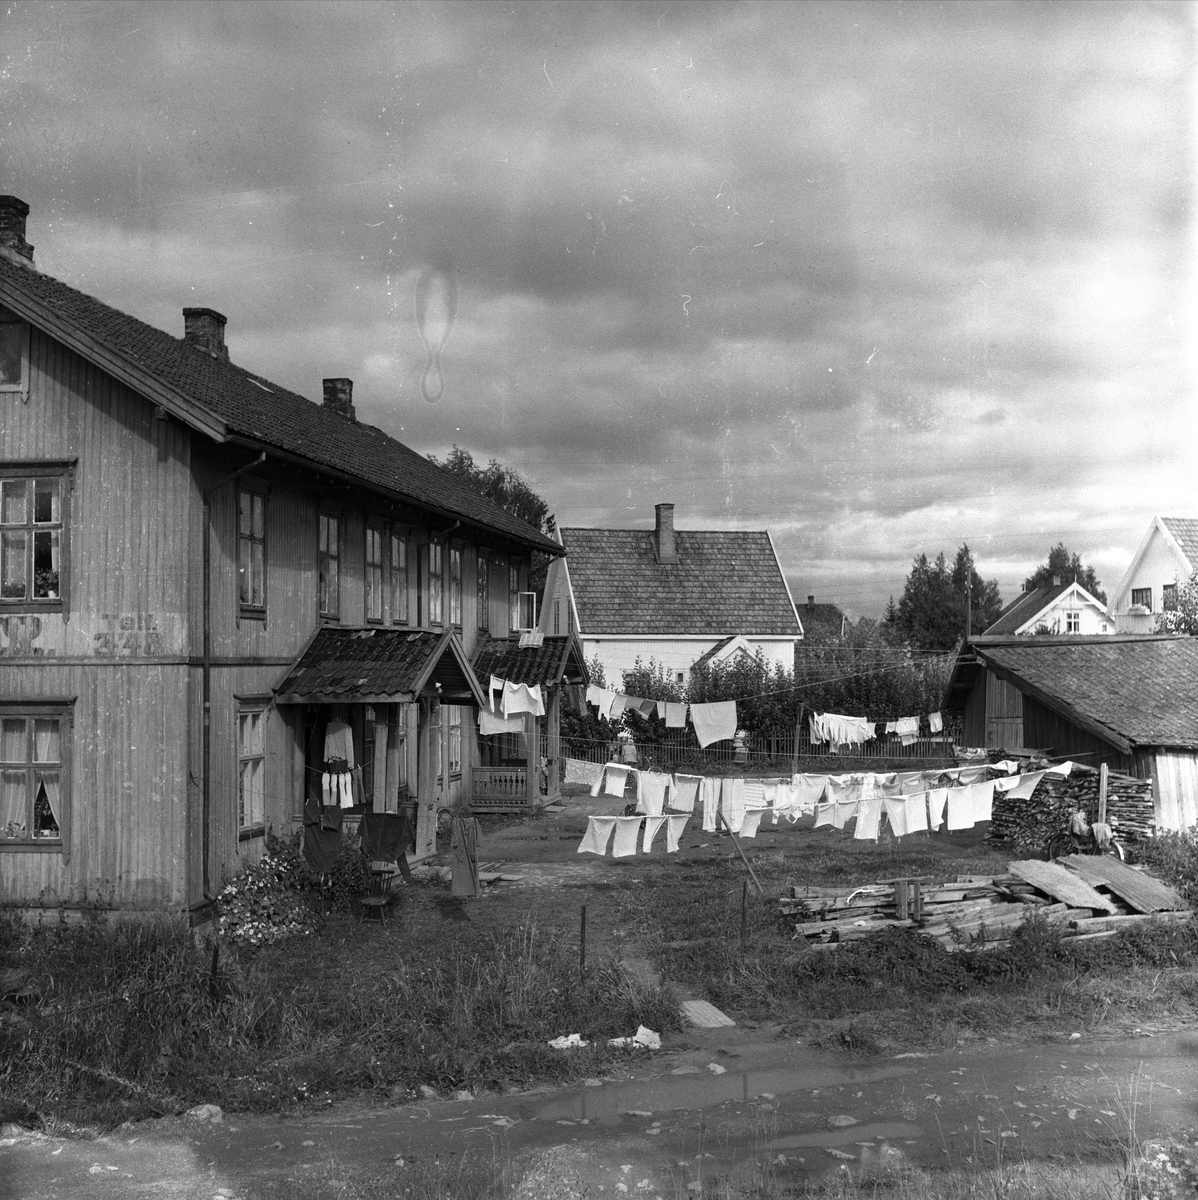 Strømmen, Skedsmo, Akershus, 10.09.1957. Trehus med klesvask på gårdsplassen